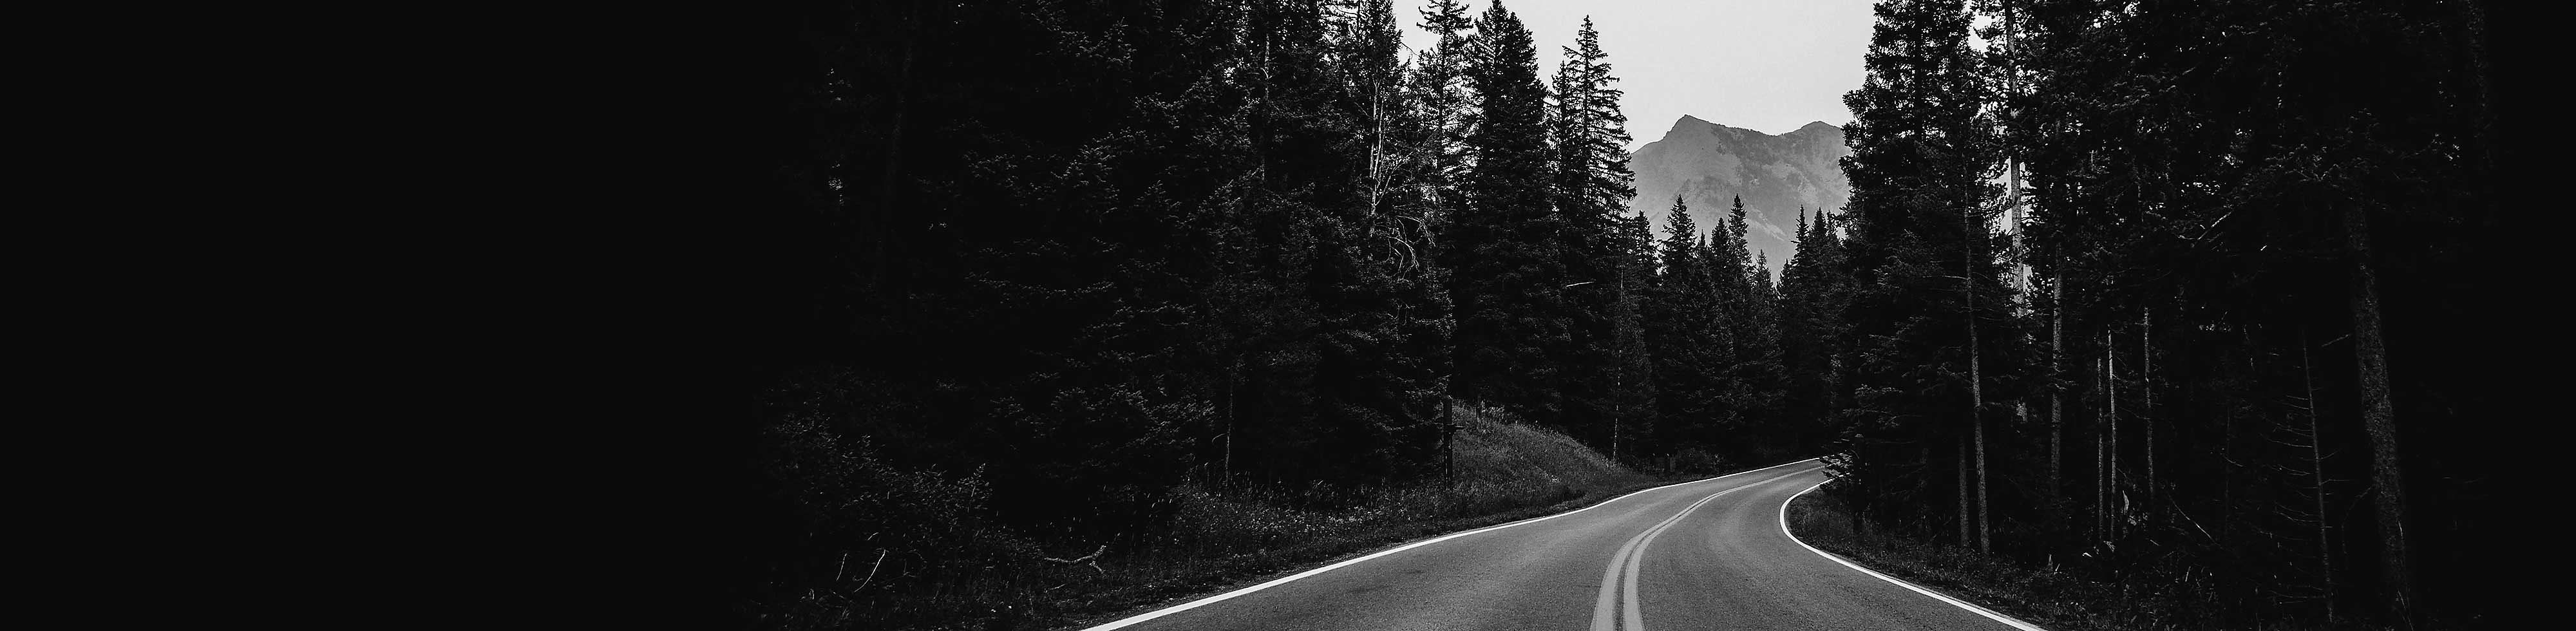 Schwarz-Weiß-Bild einer kurvenreichen Straße, umgeben von Bäumen mit einem Berg im Hintergrund